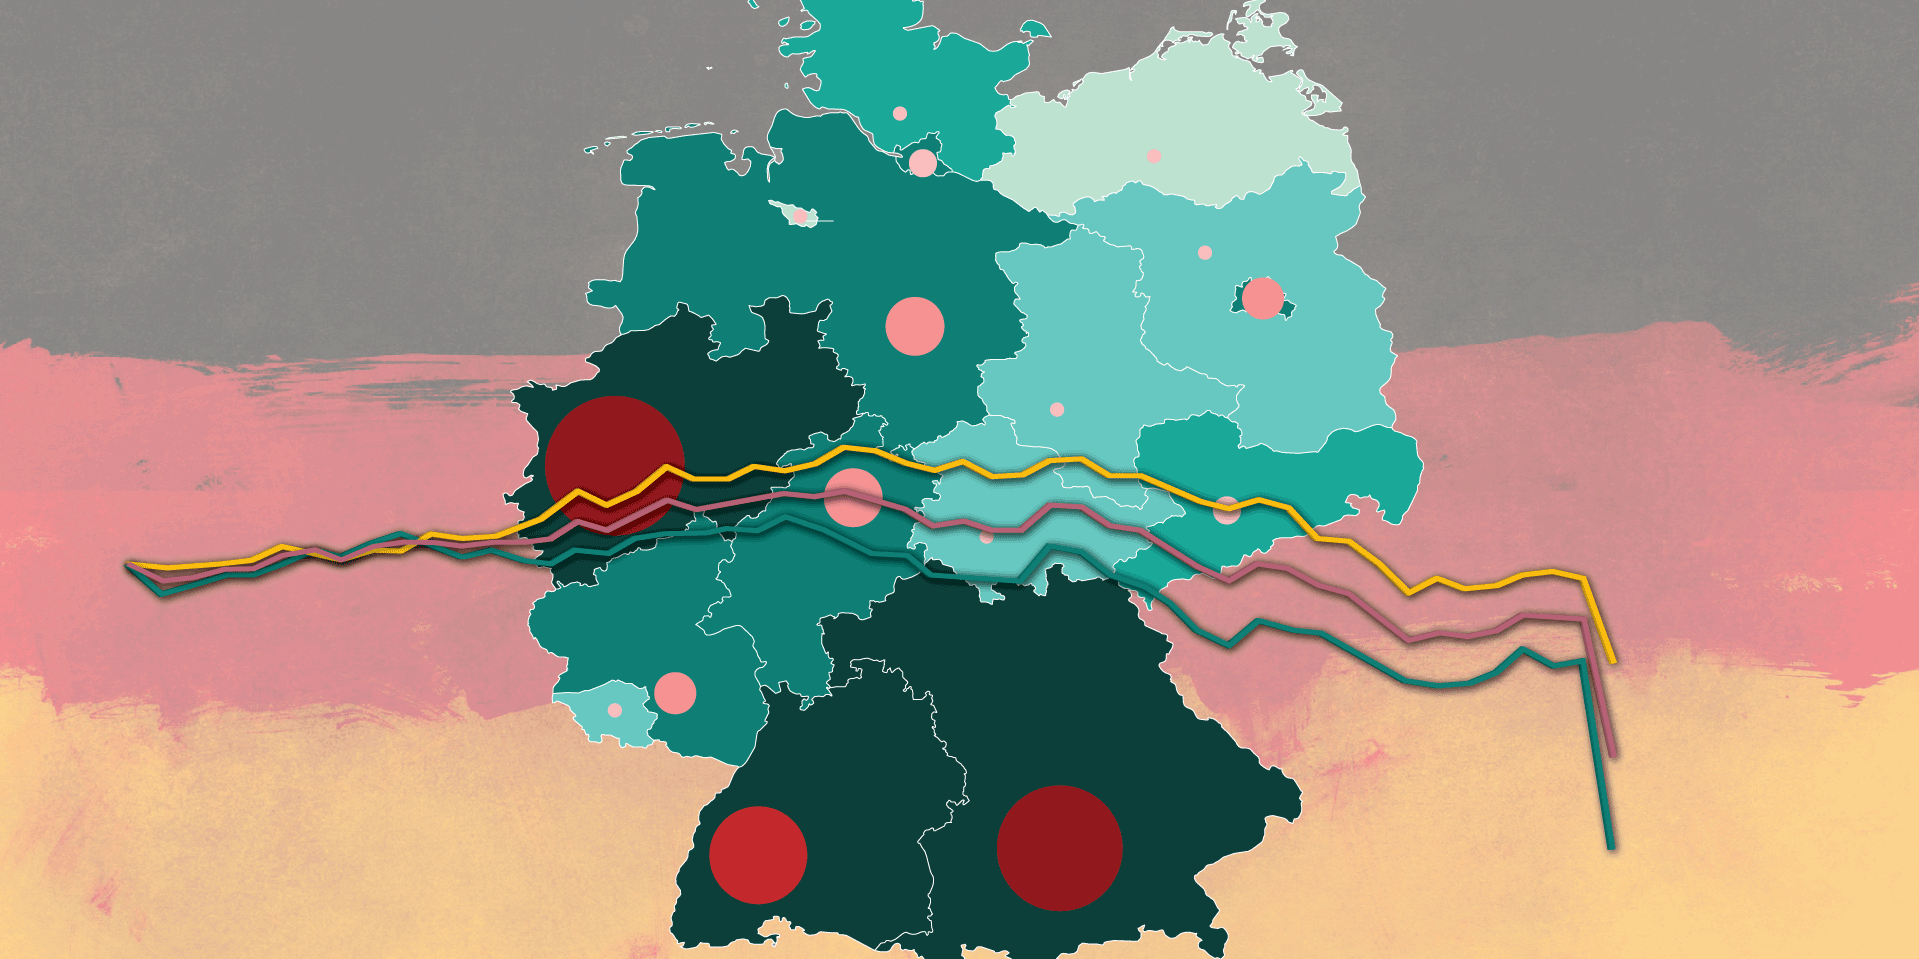 Almanya Zew Güven Endeksi: Kötü verilere bir çok kötüsü eklendi-Durgunluk son çeyrekte